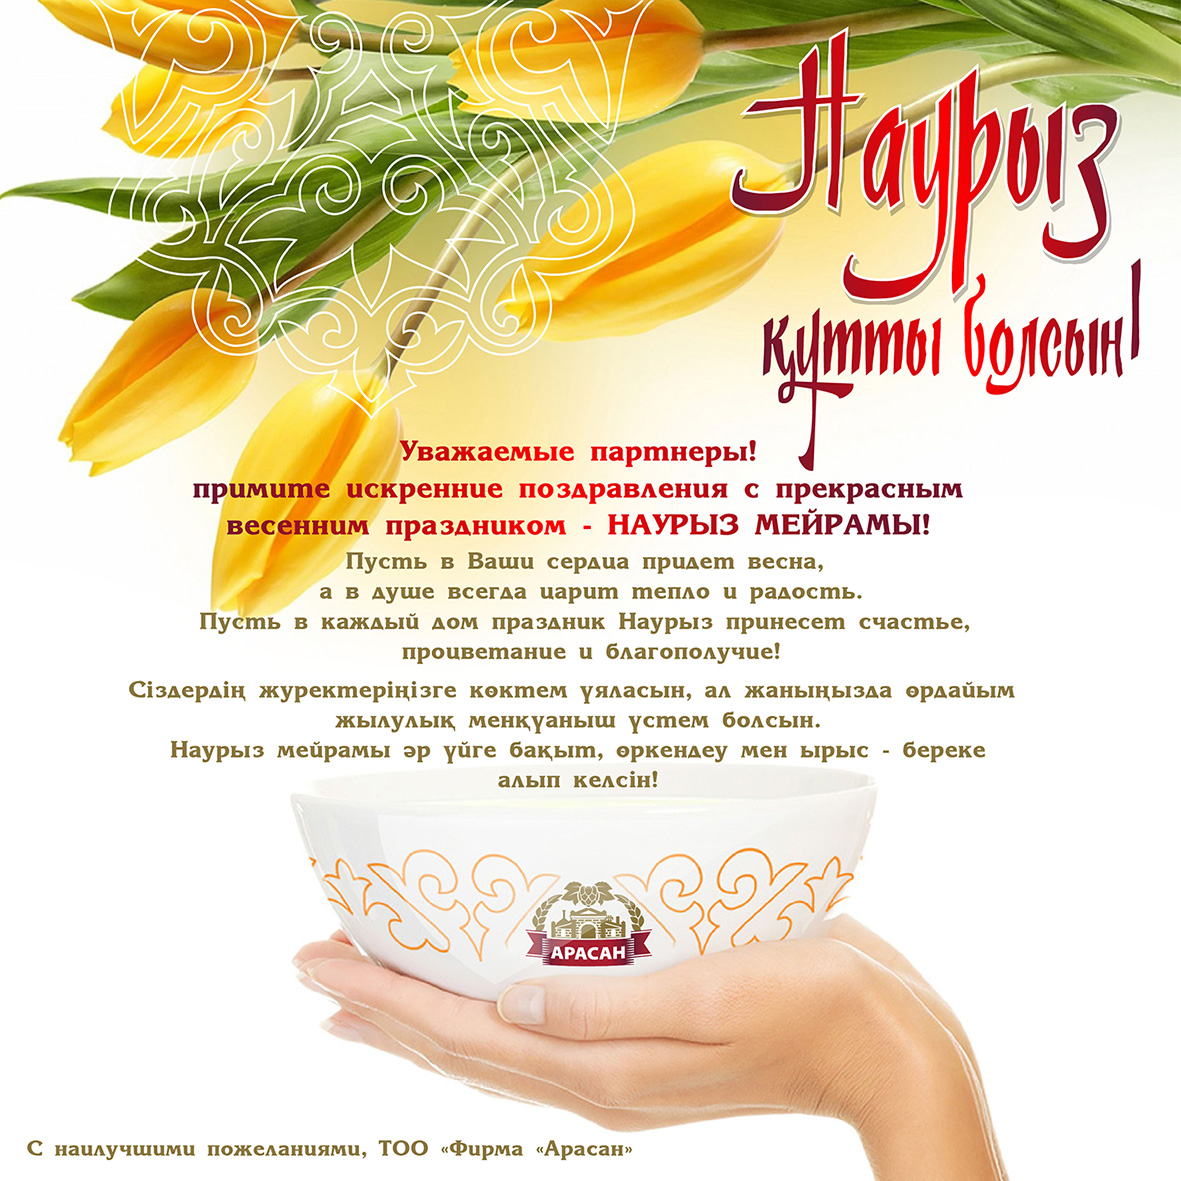 Красивое поздравление с наурызом на русском. Поздравление с наурузлм. Наурыз открытки. Поздравление гэнаурыз. Наурыз открытки с поздравлениями.